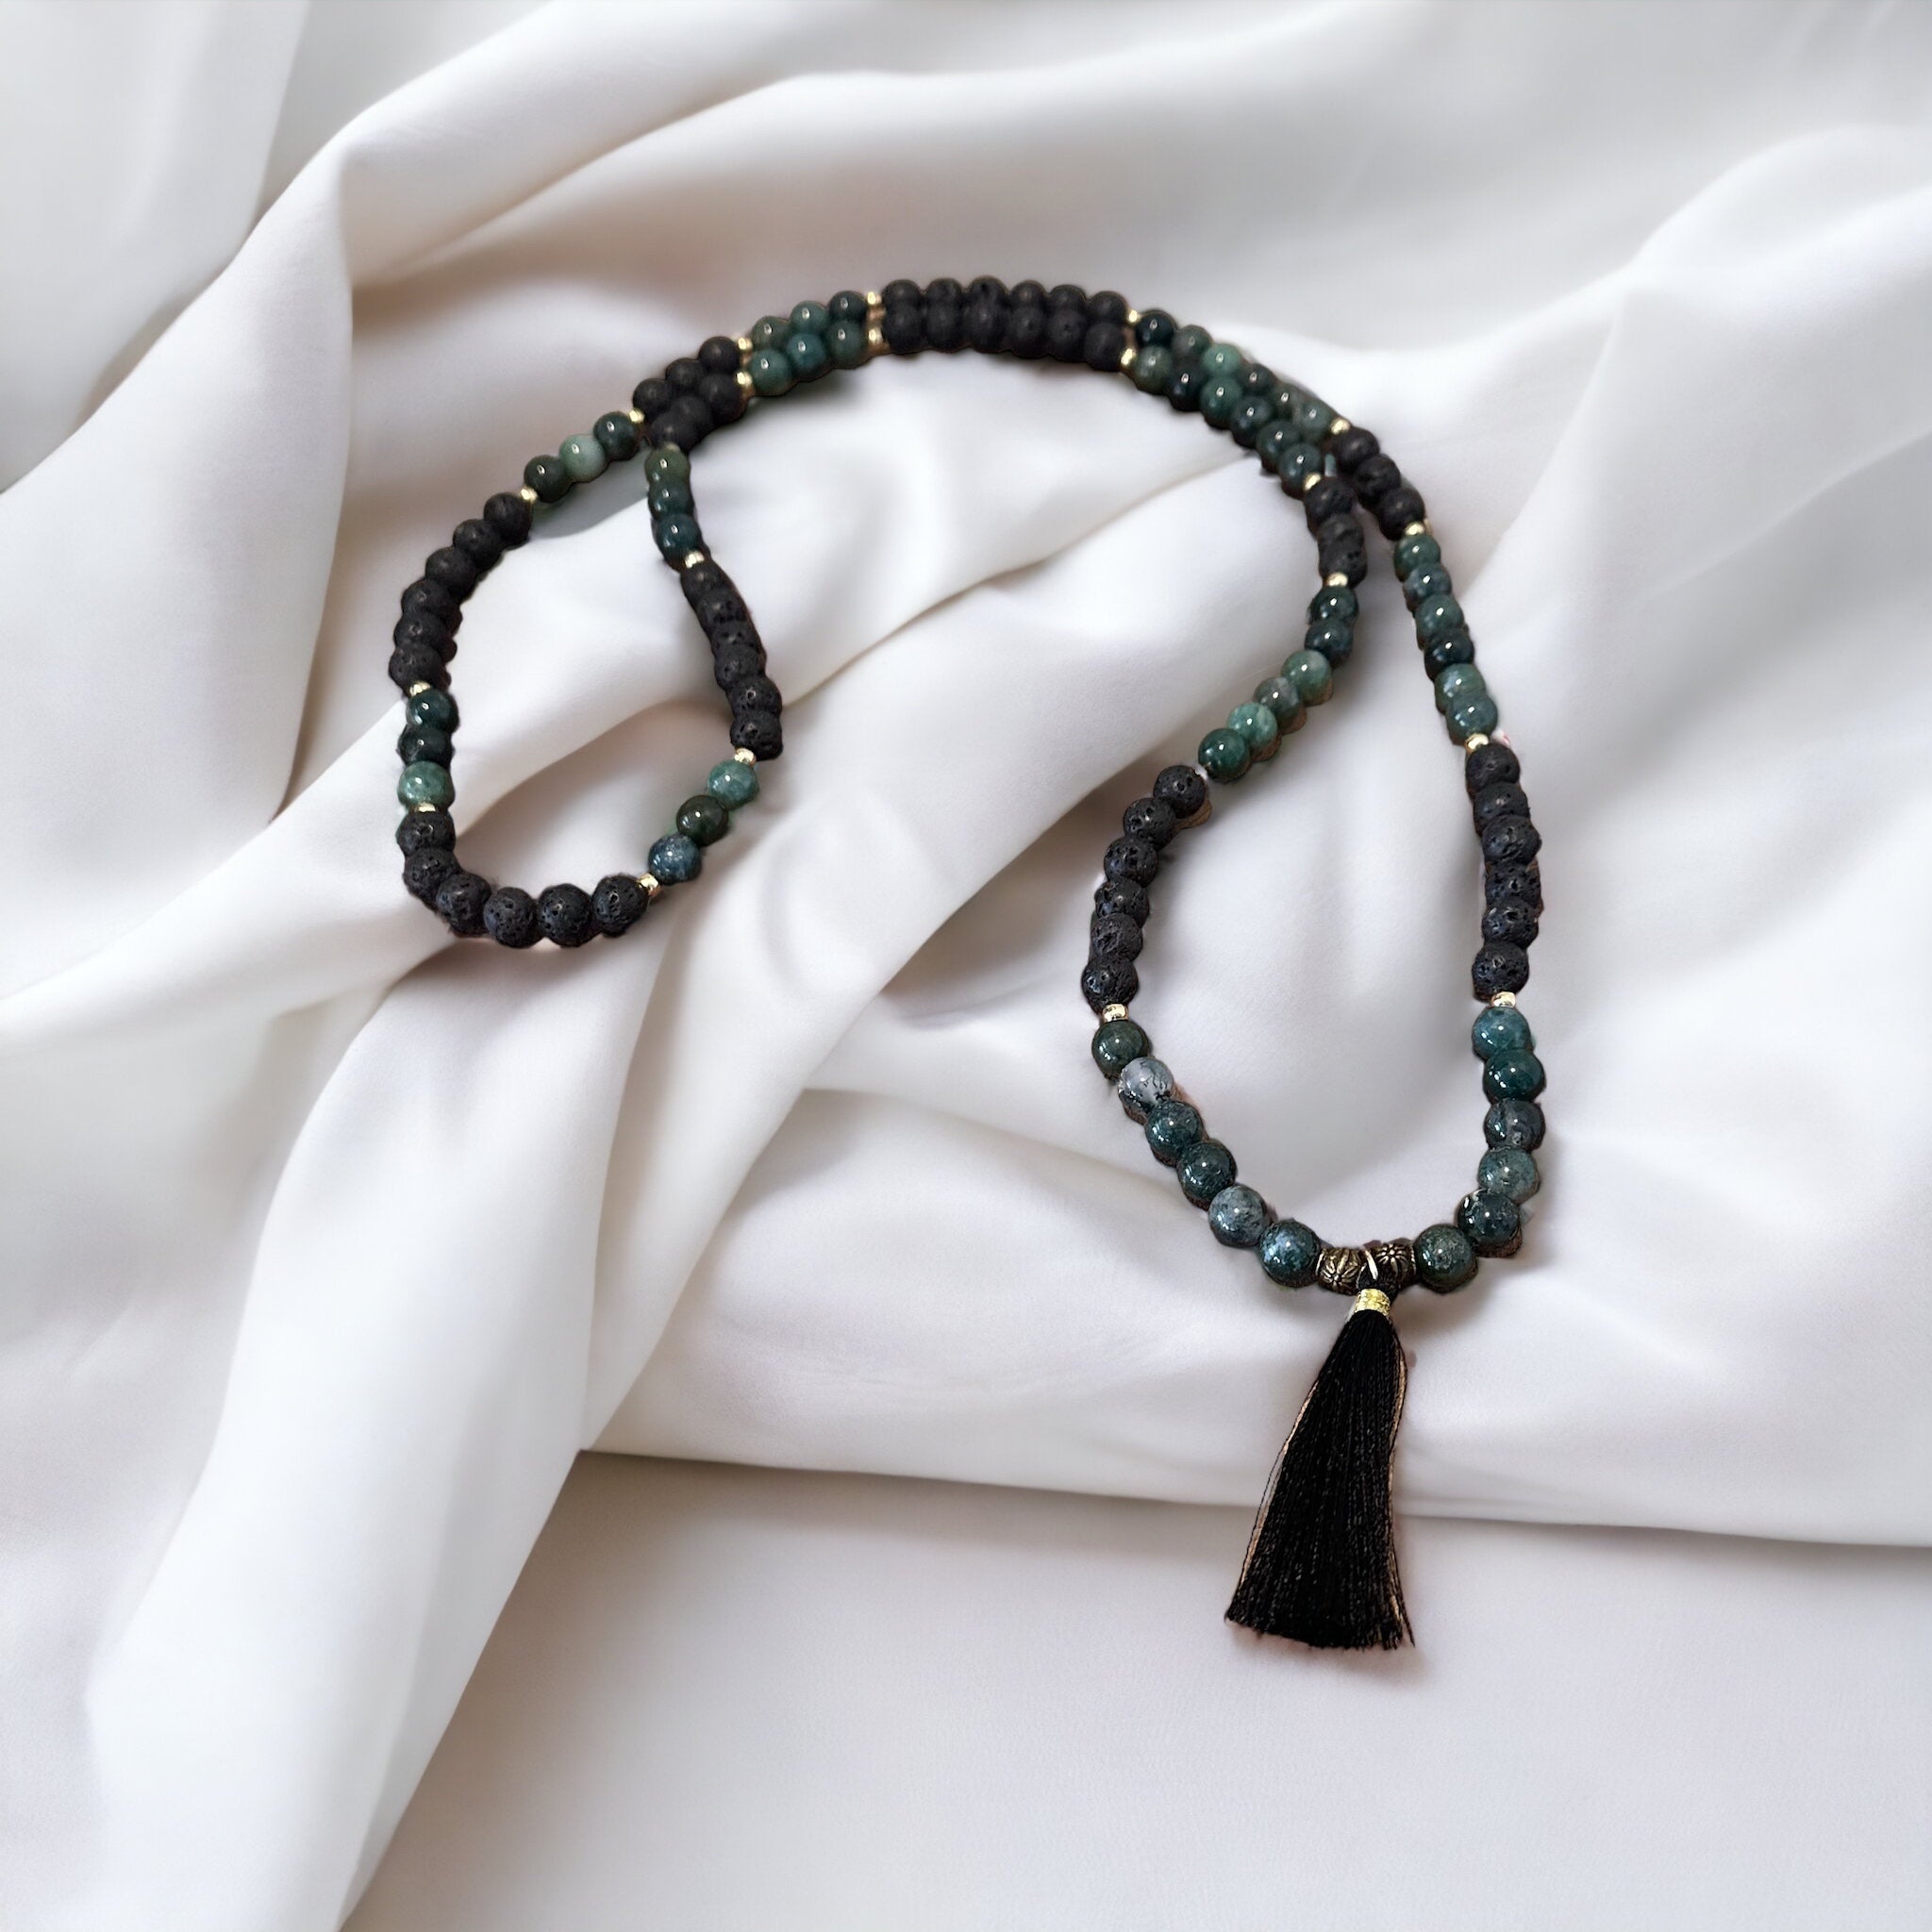 Fancy Beads - Moss Agate, Black Lava, 108 Mala Prayer Beads Necklace/Bracelet